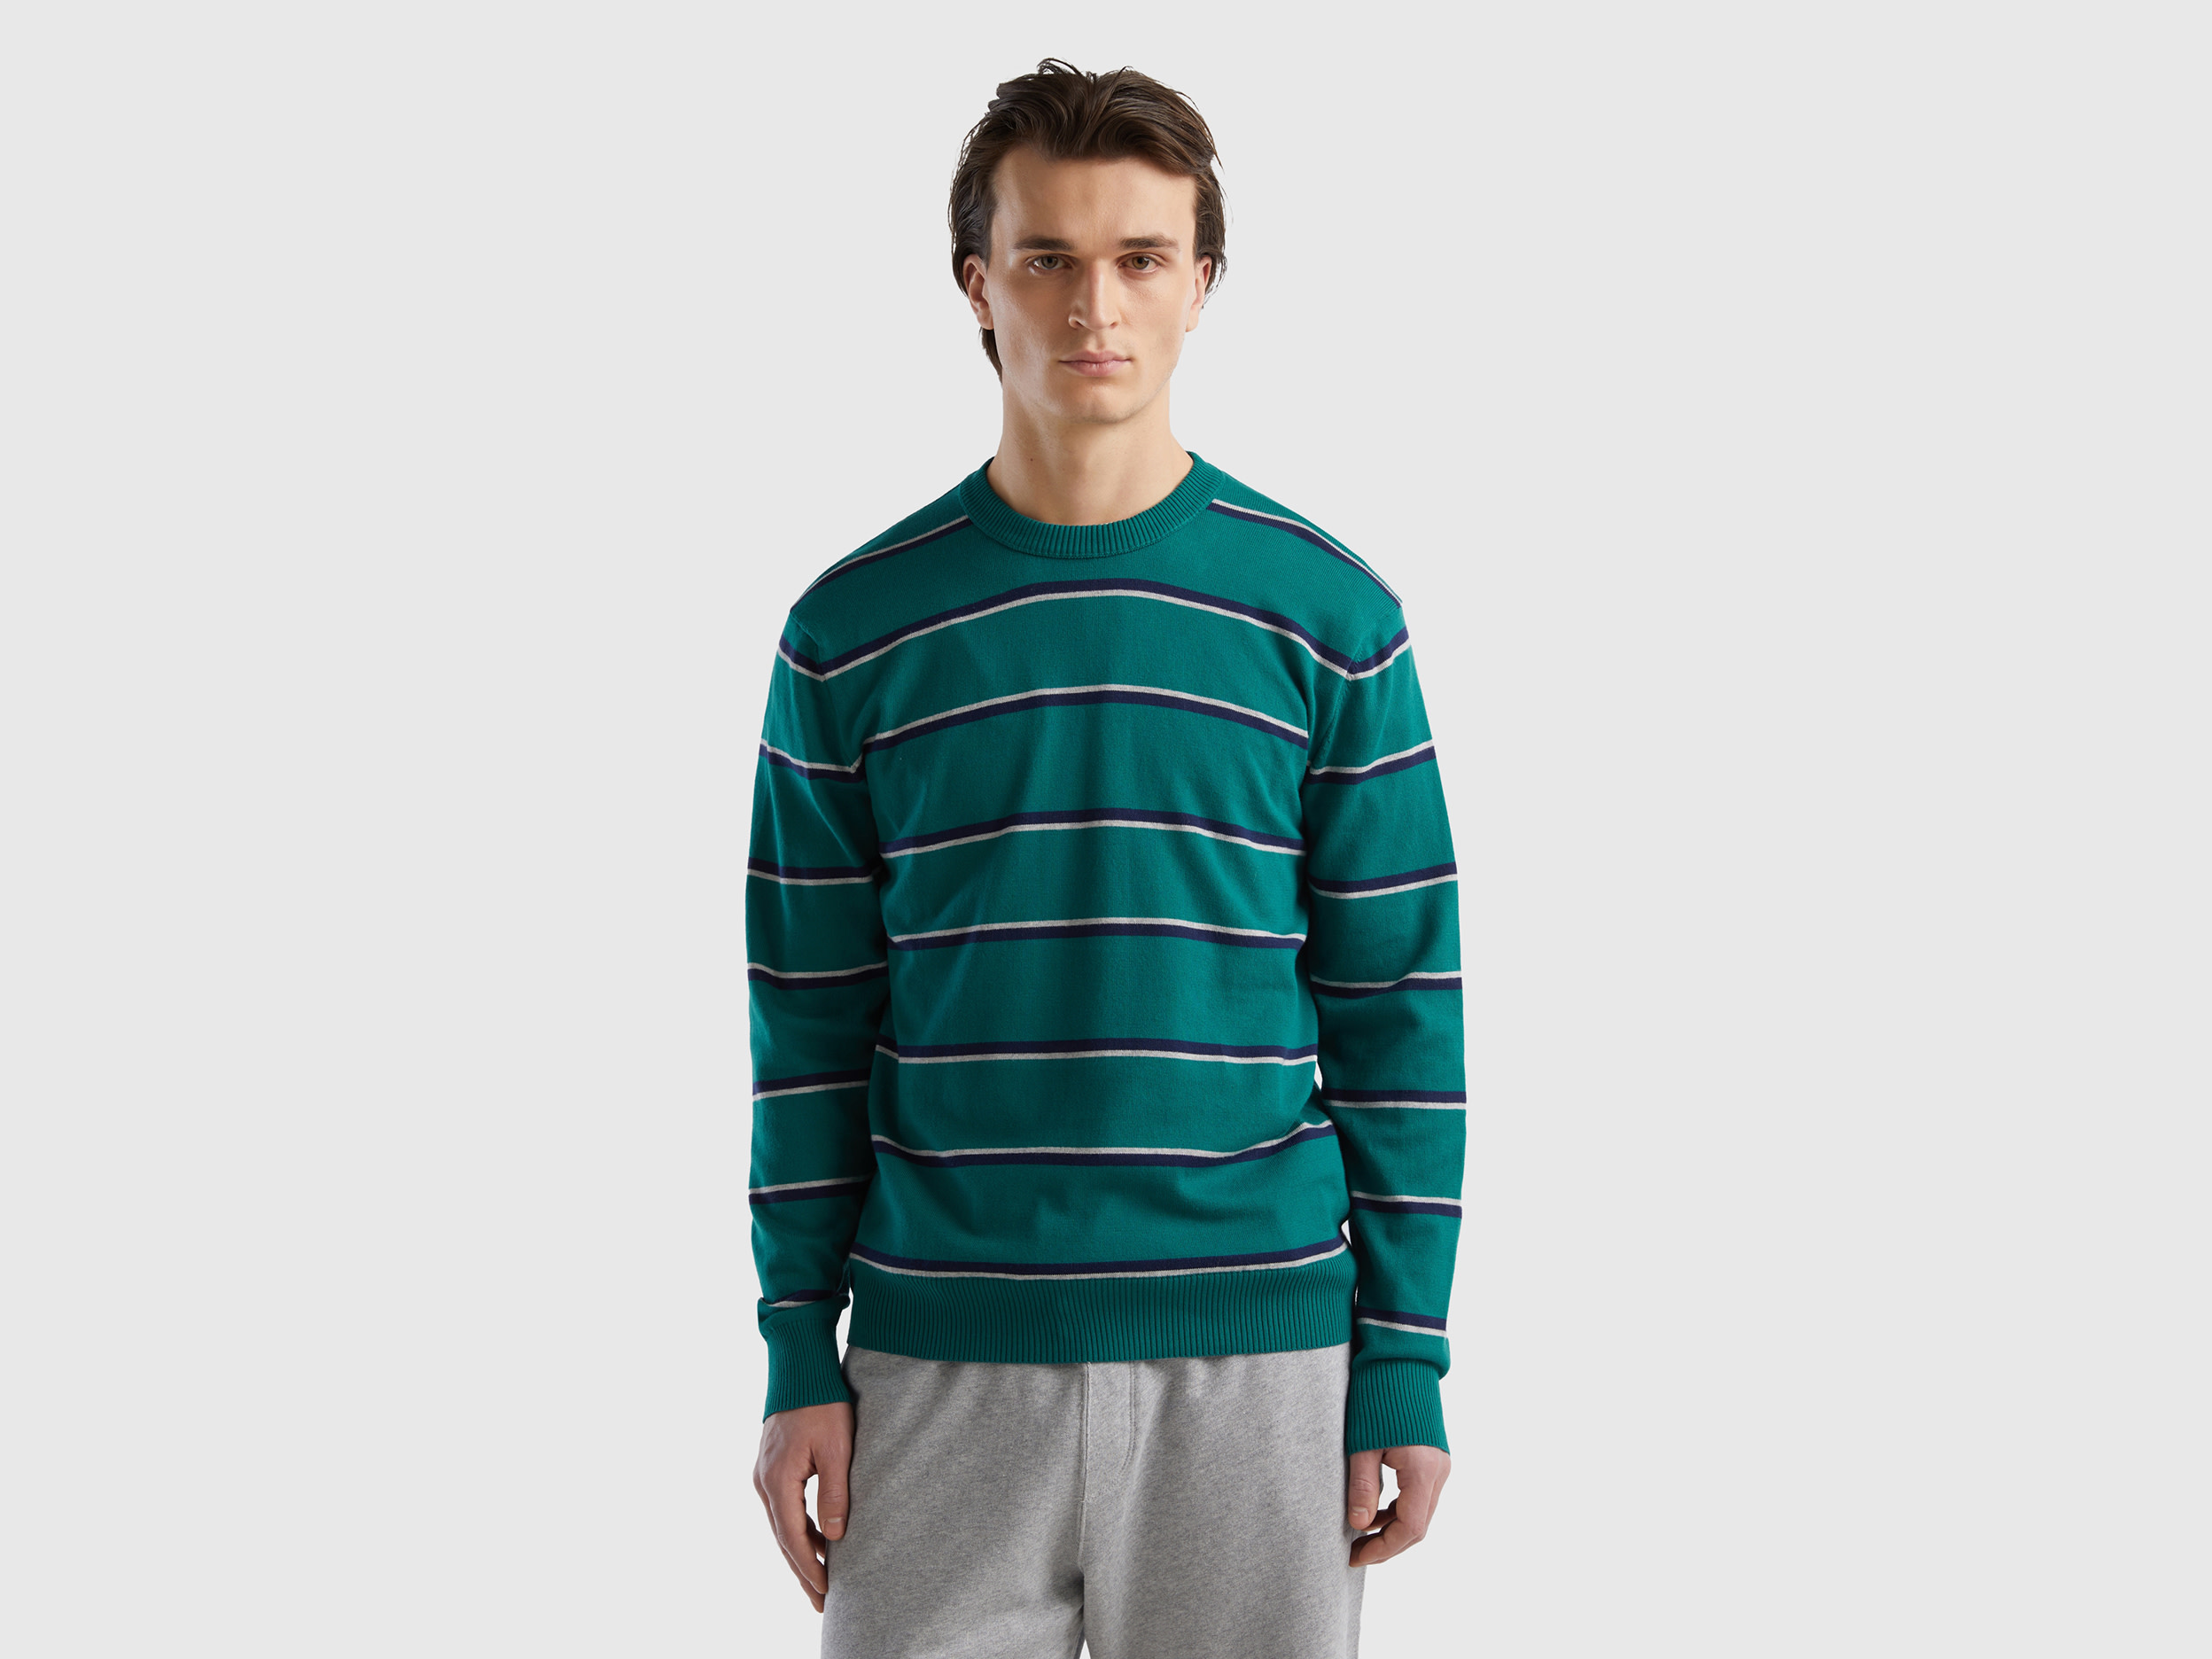 Benetton, Striped 100% Cotton Sweater, size M, Dark Green, Men